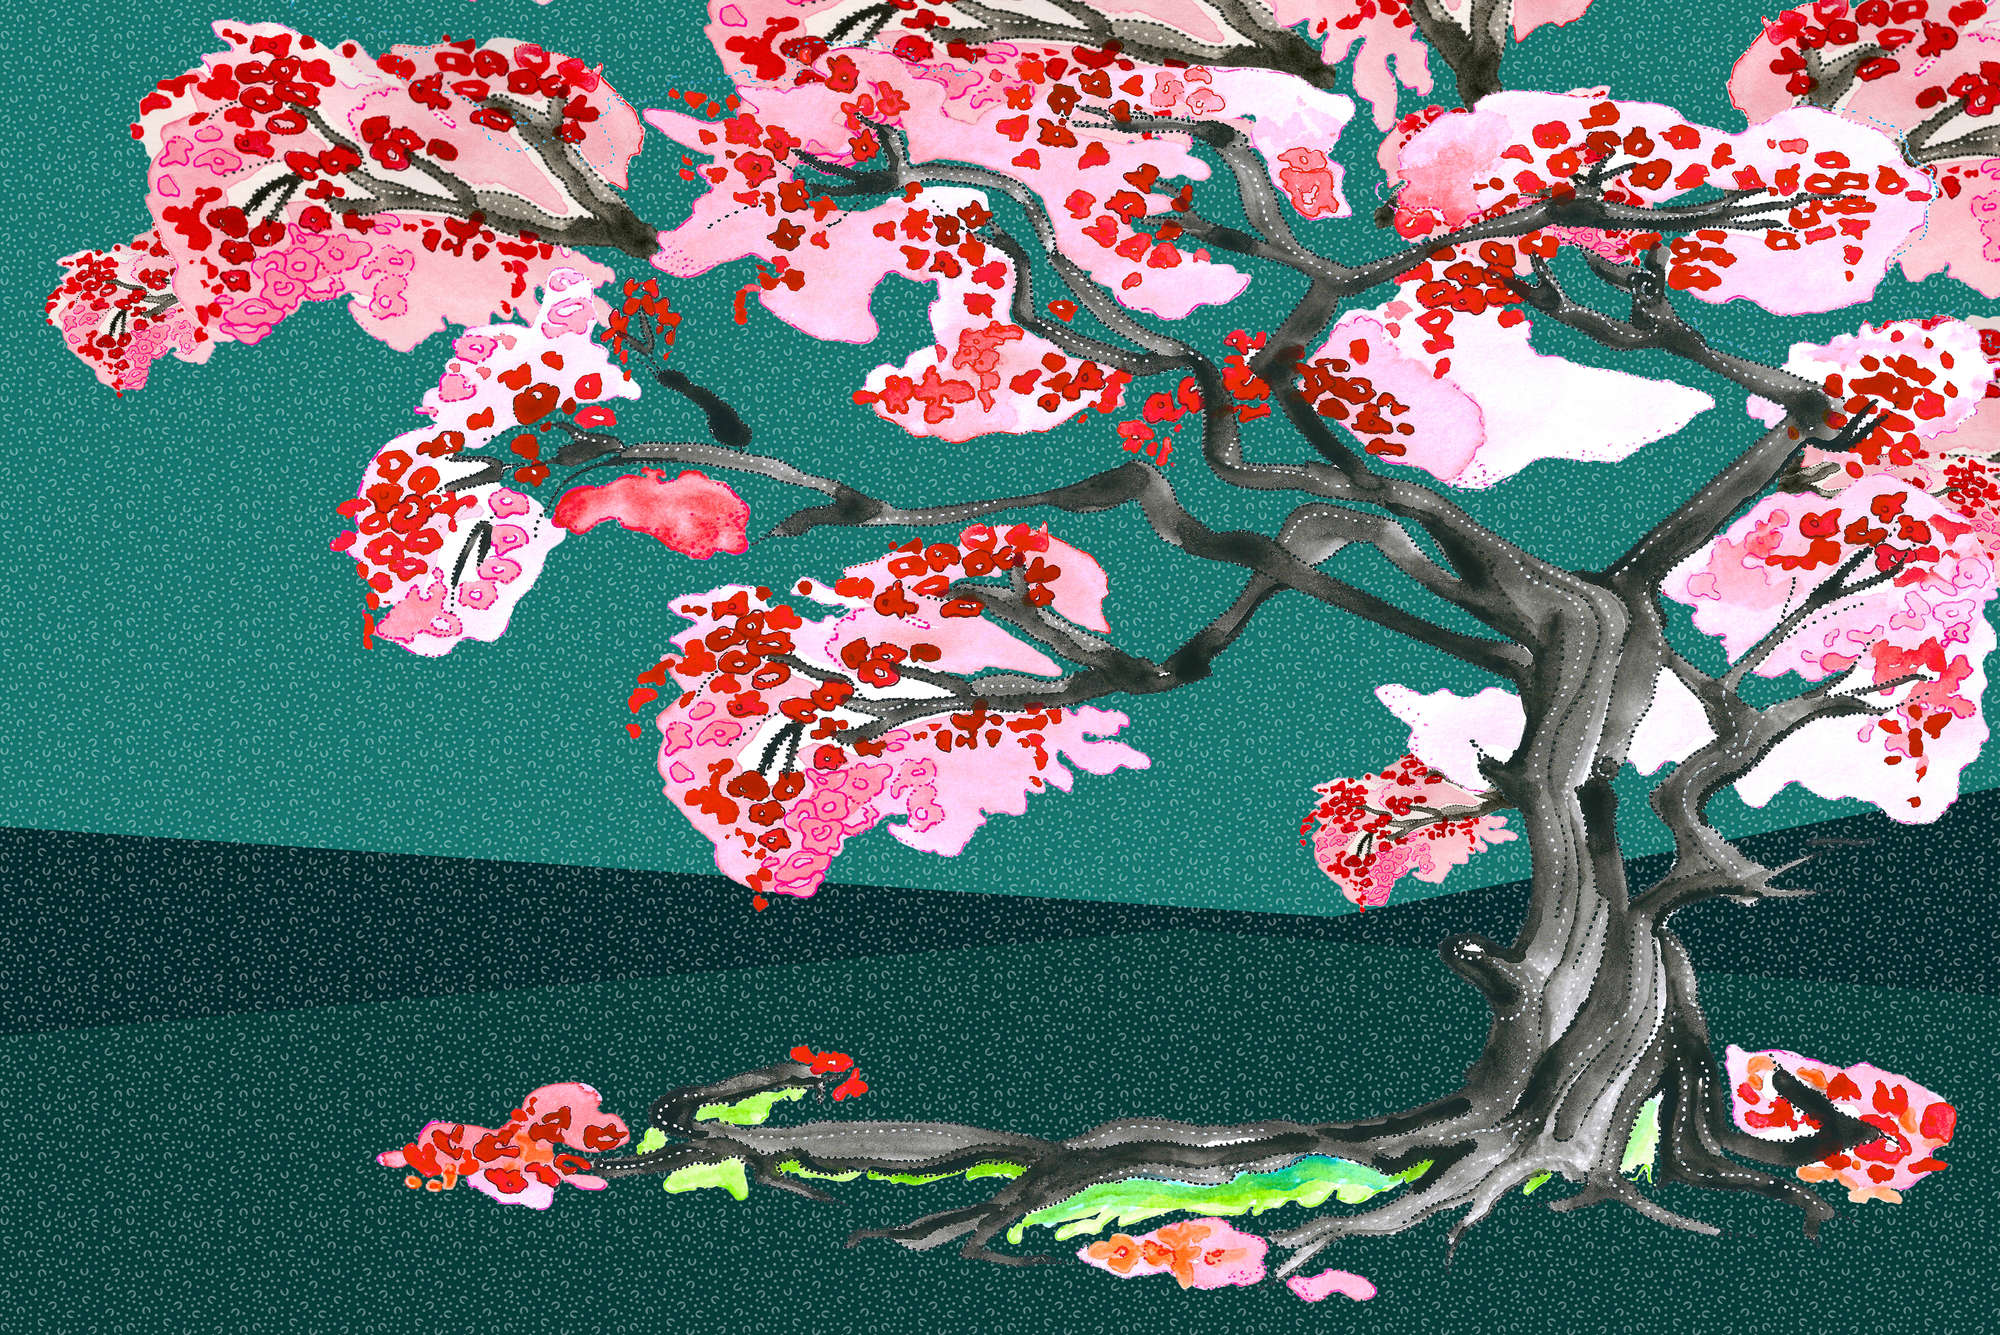             Papier peint fleurs de cerisiers style BD asiatique sur intissé lisse nacré
        